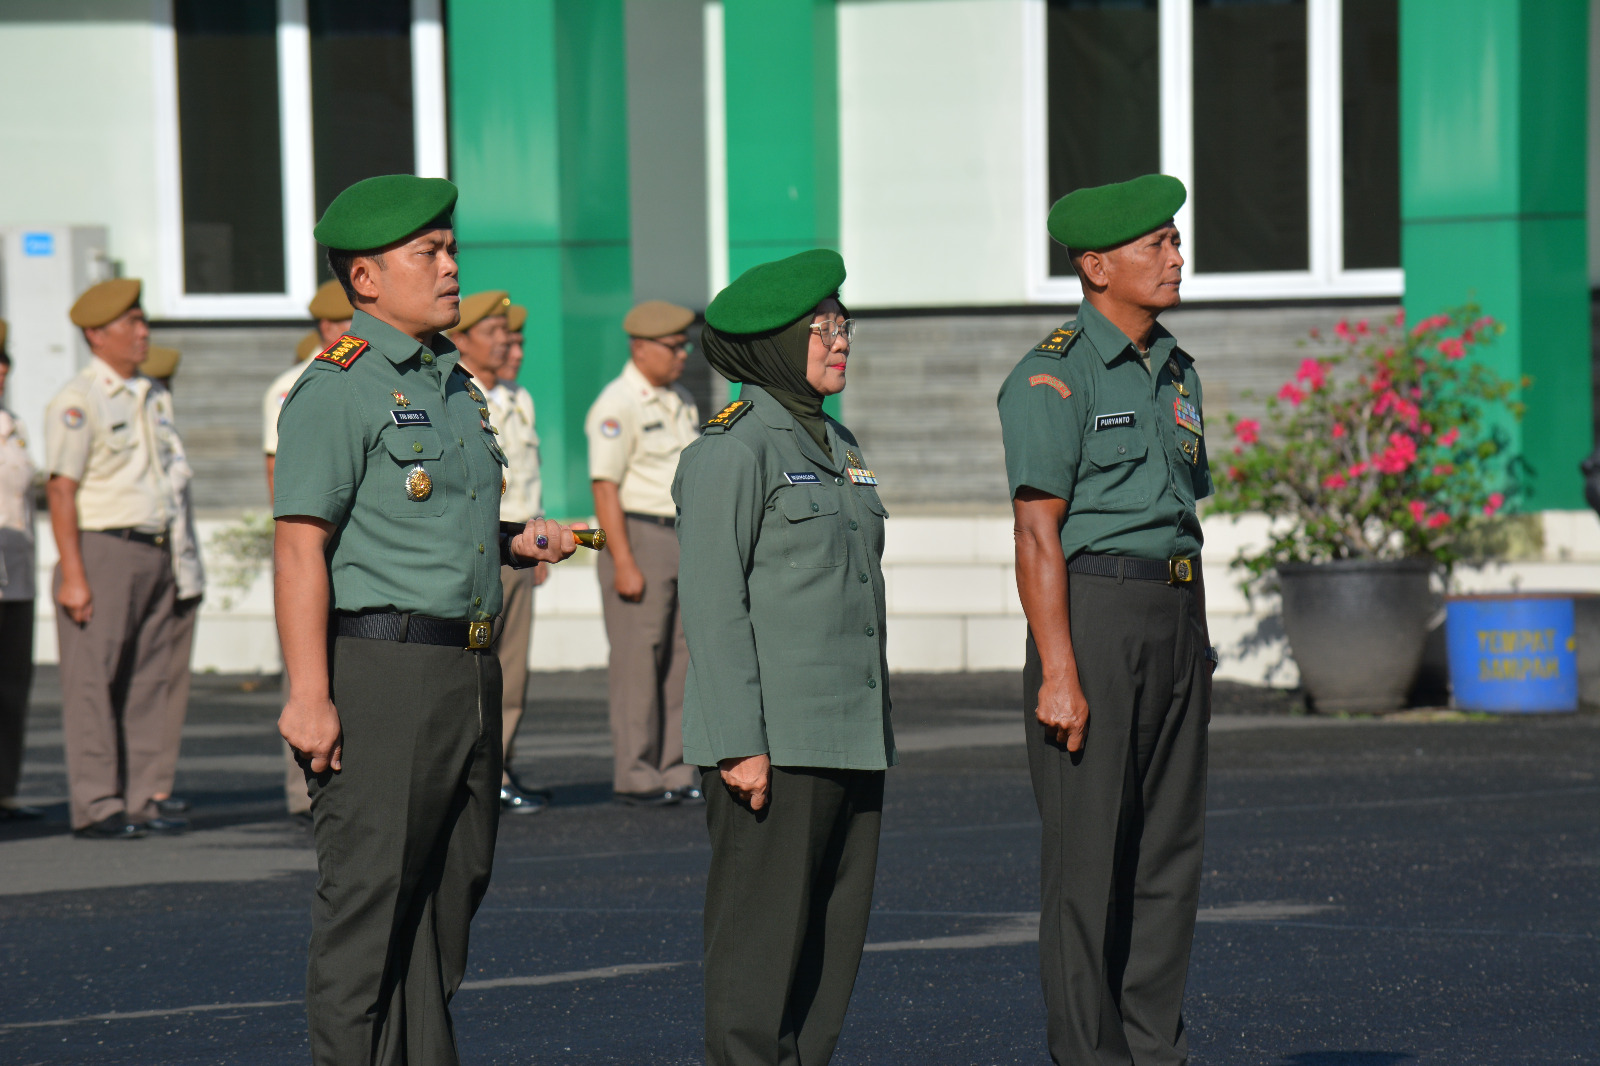 Dandim 0410/KBL Tri Arto Subagio M.Int.Rel.,MMDS Resmi Dilantik Menyandang Pangkat Kolonel